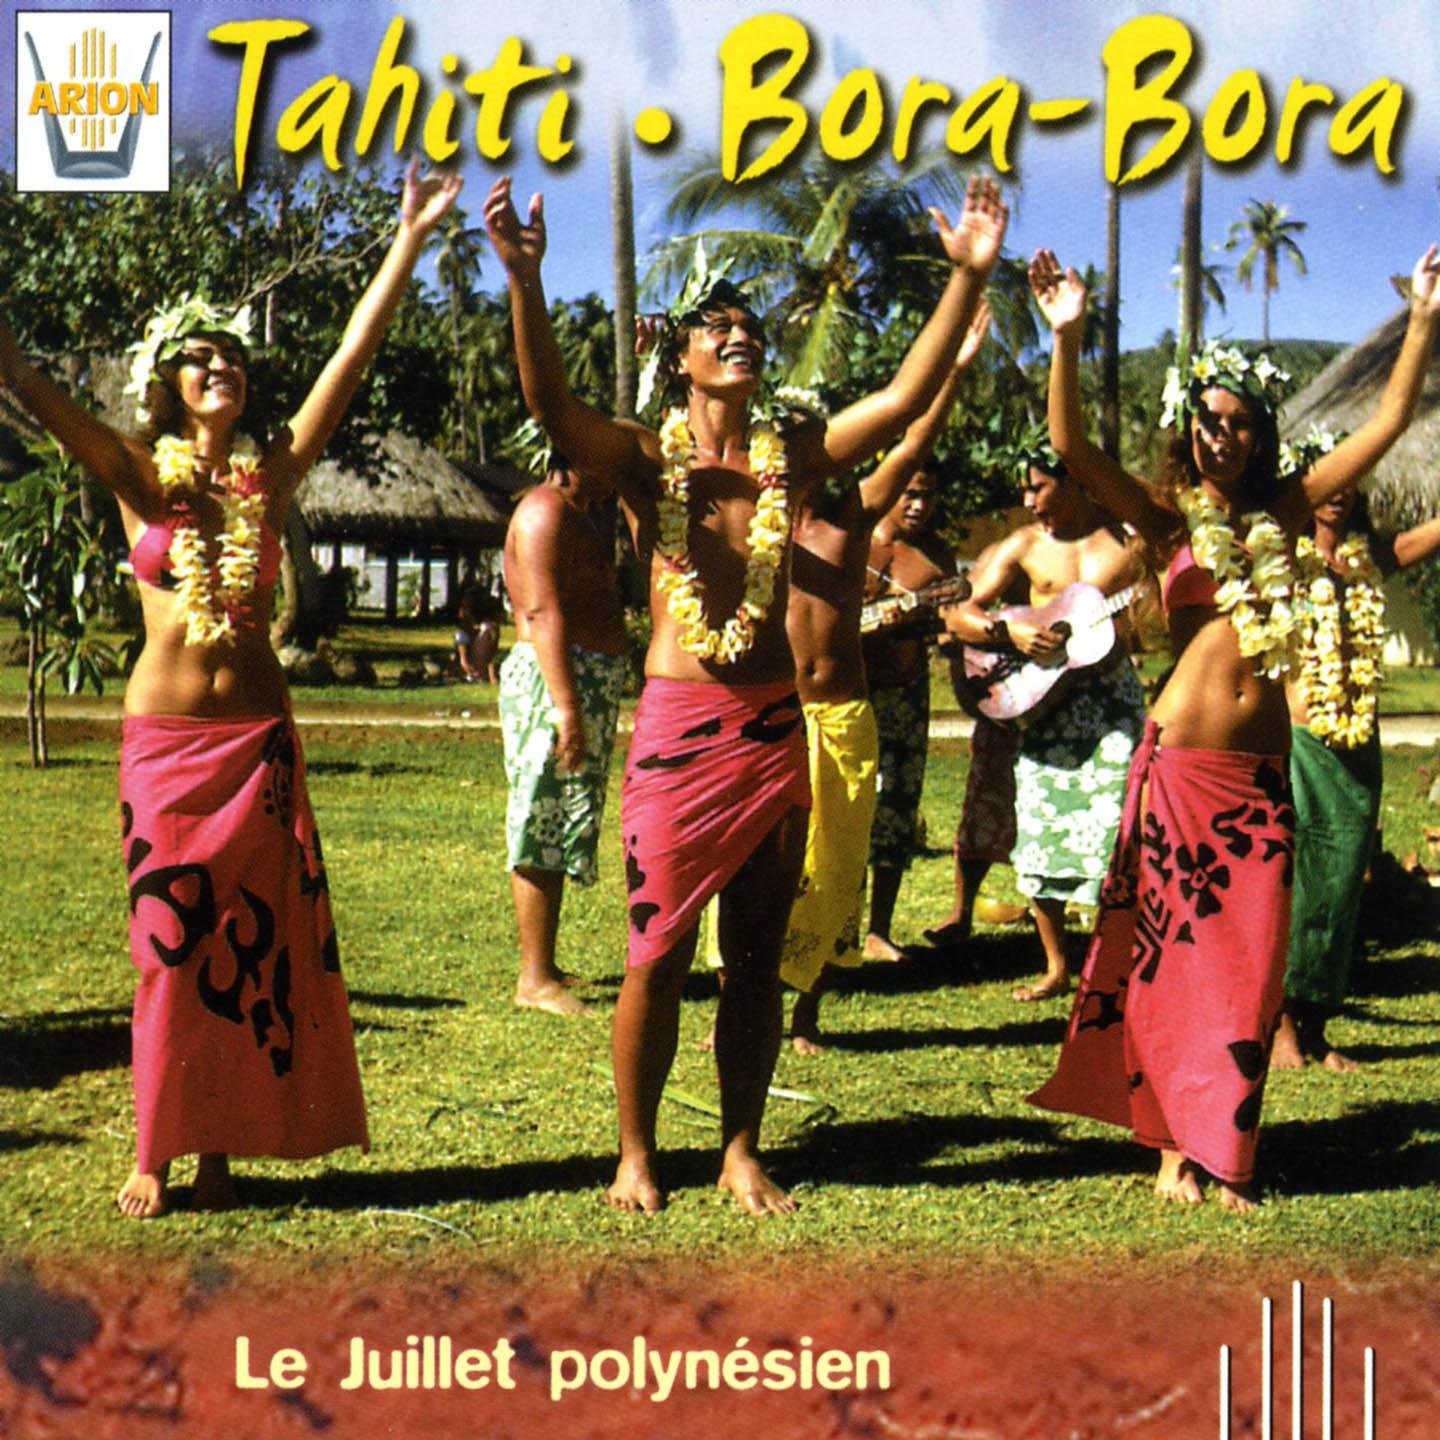 Tahiti, Bora-Bora